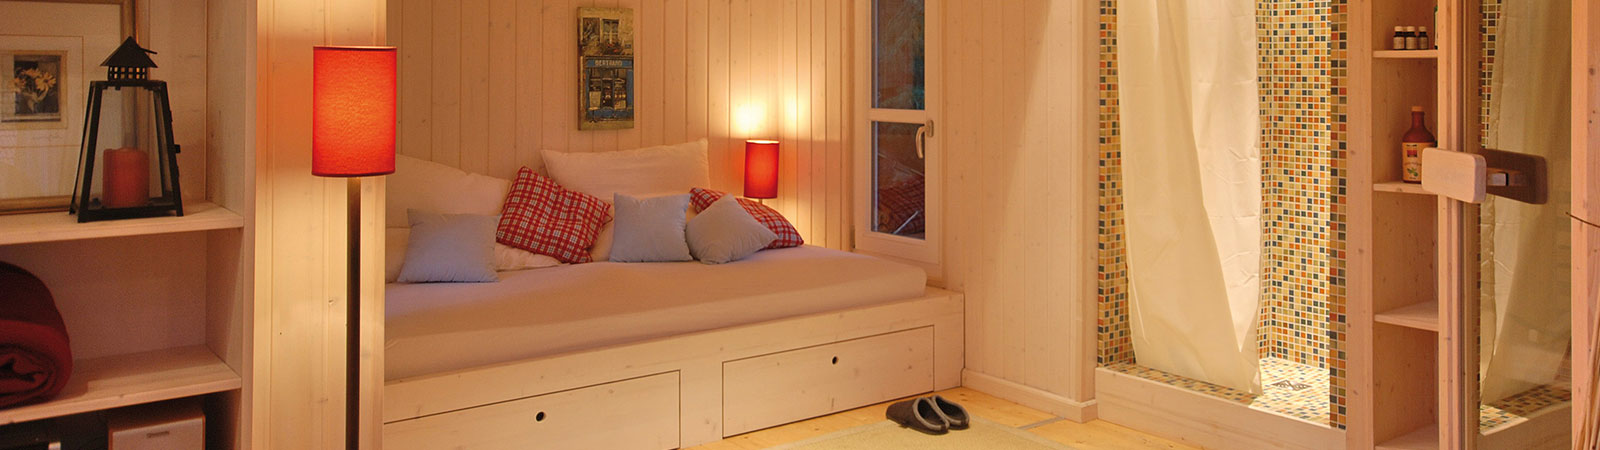 Osmo Holz für Möbelbau - Leimholz im Haus für Wände und Fußboden